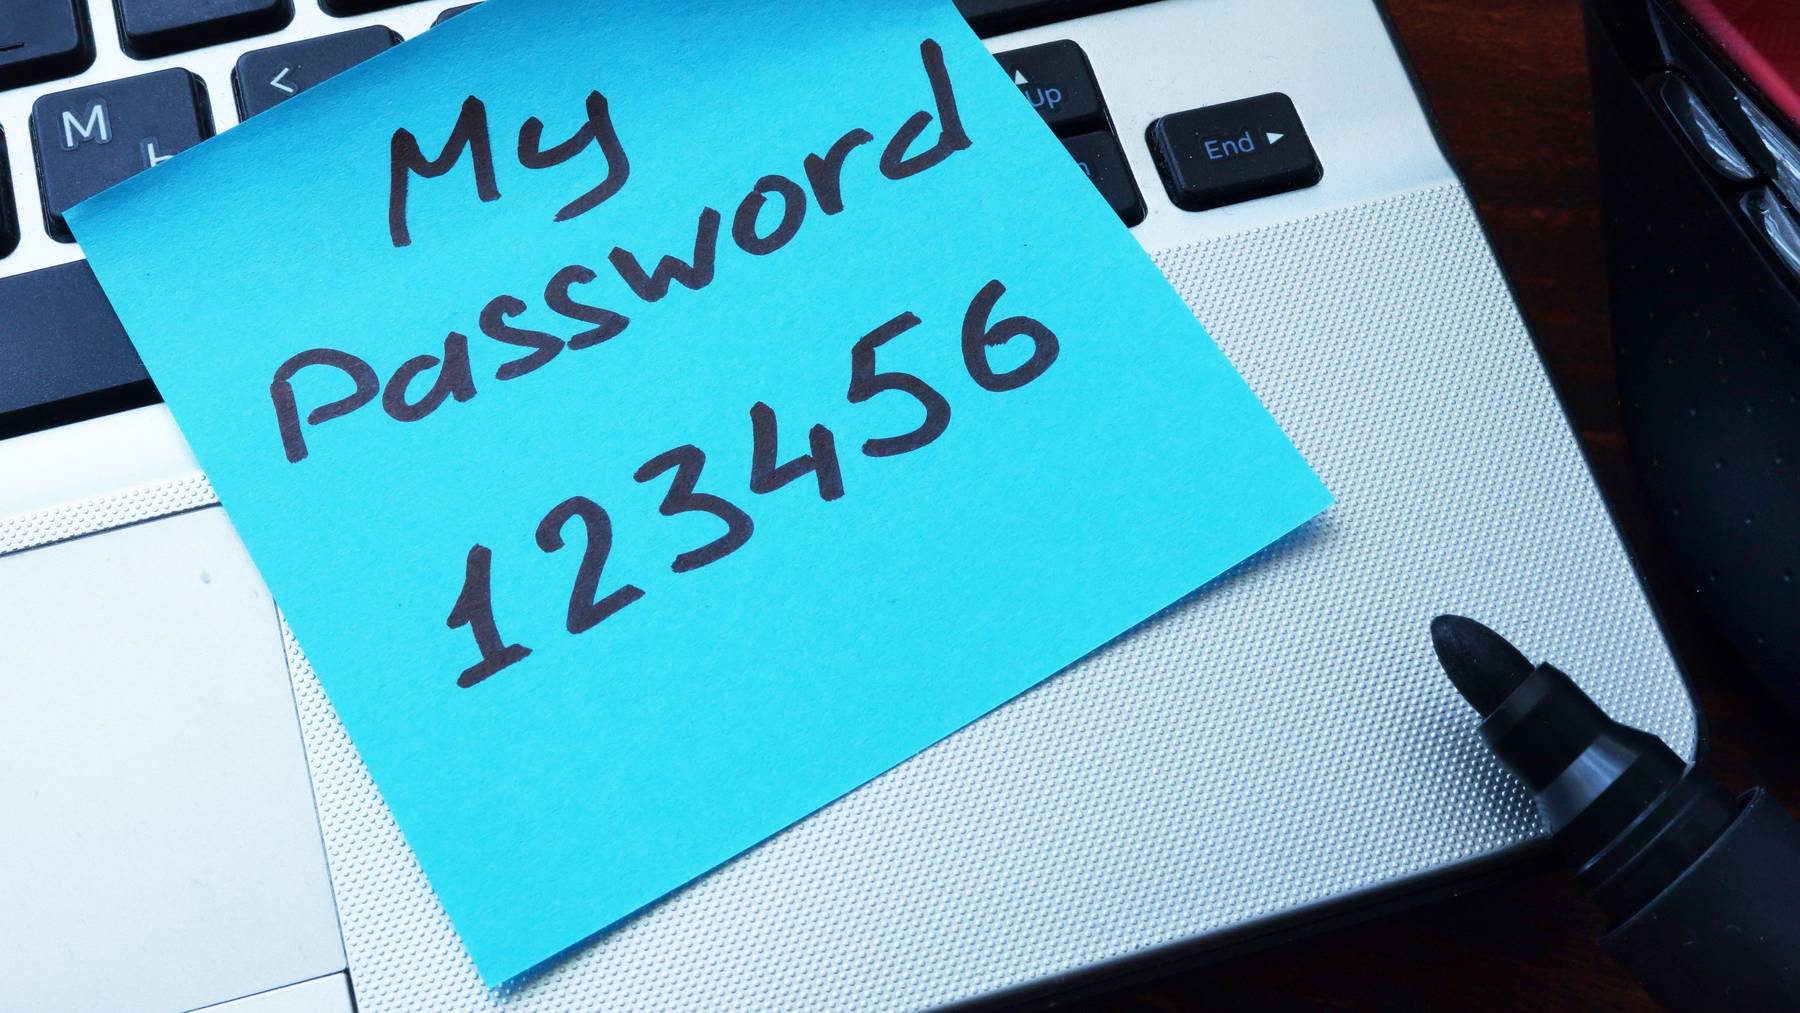 Das meist genutzte Passwort der Welt